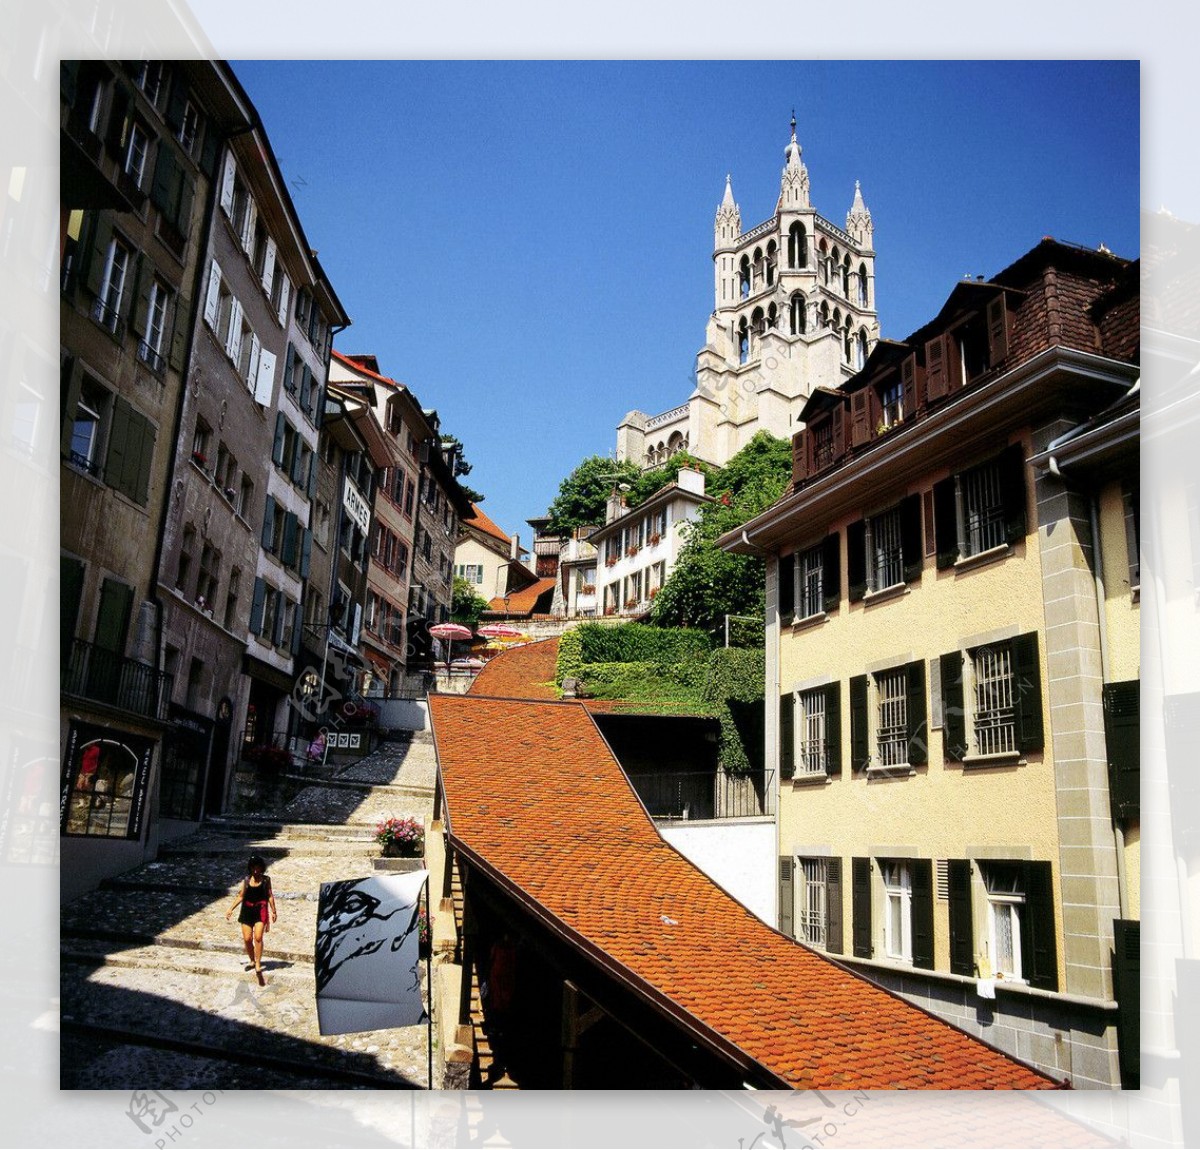 瑞士小镇风貌图片